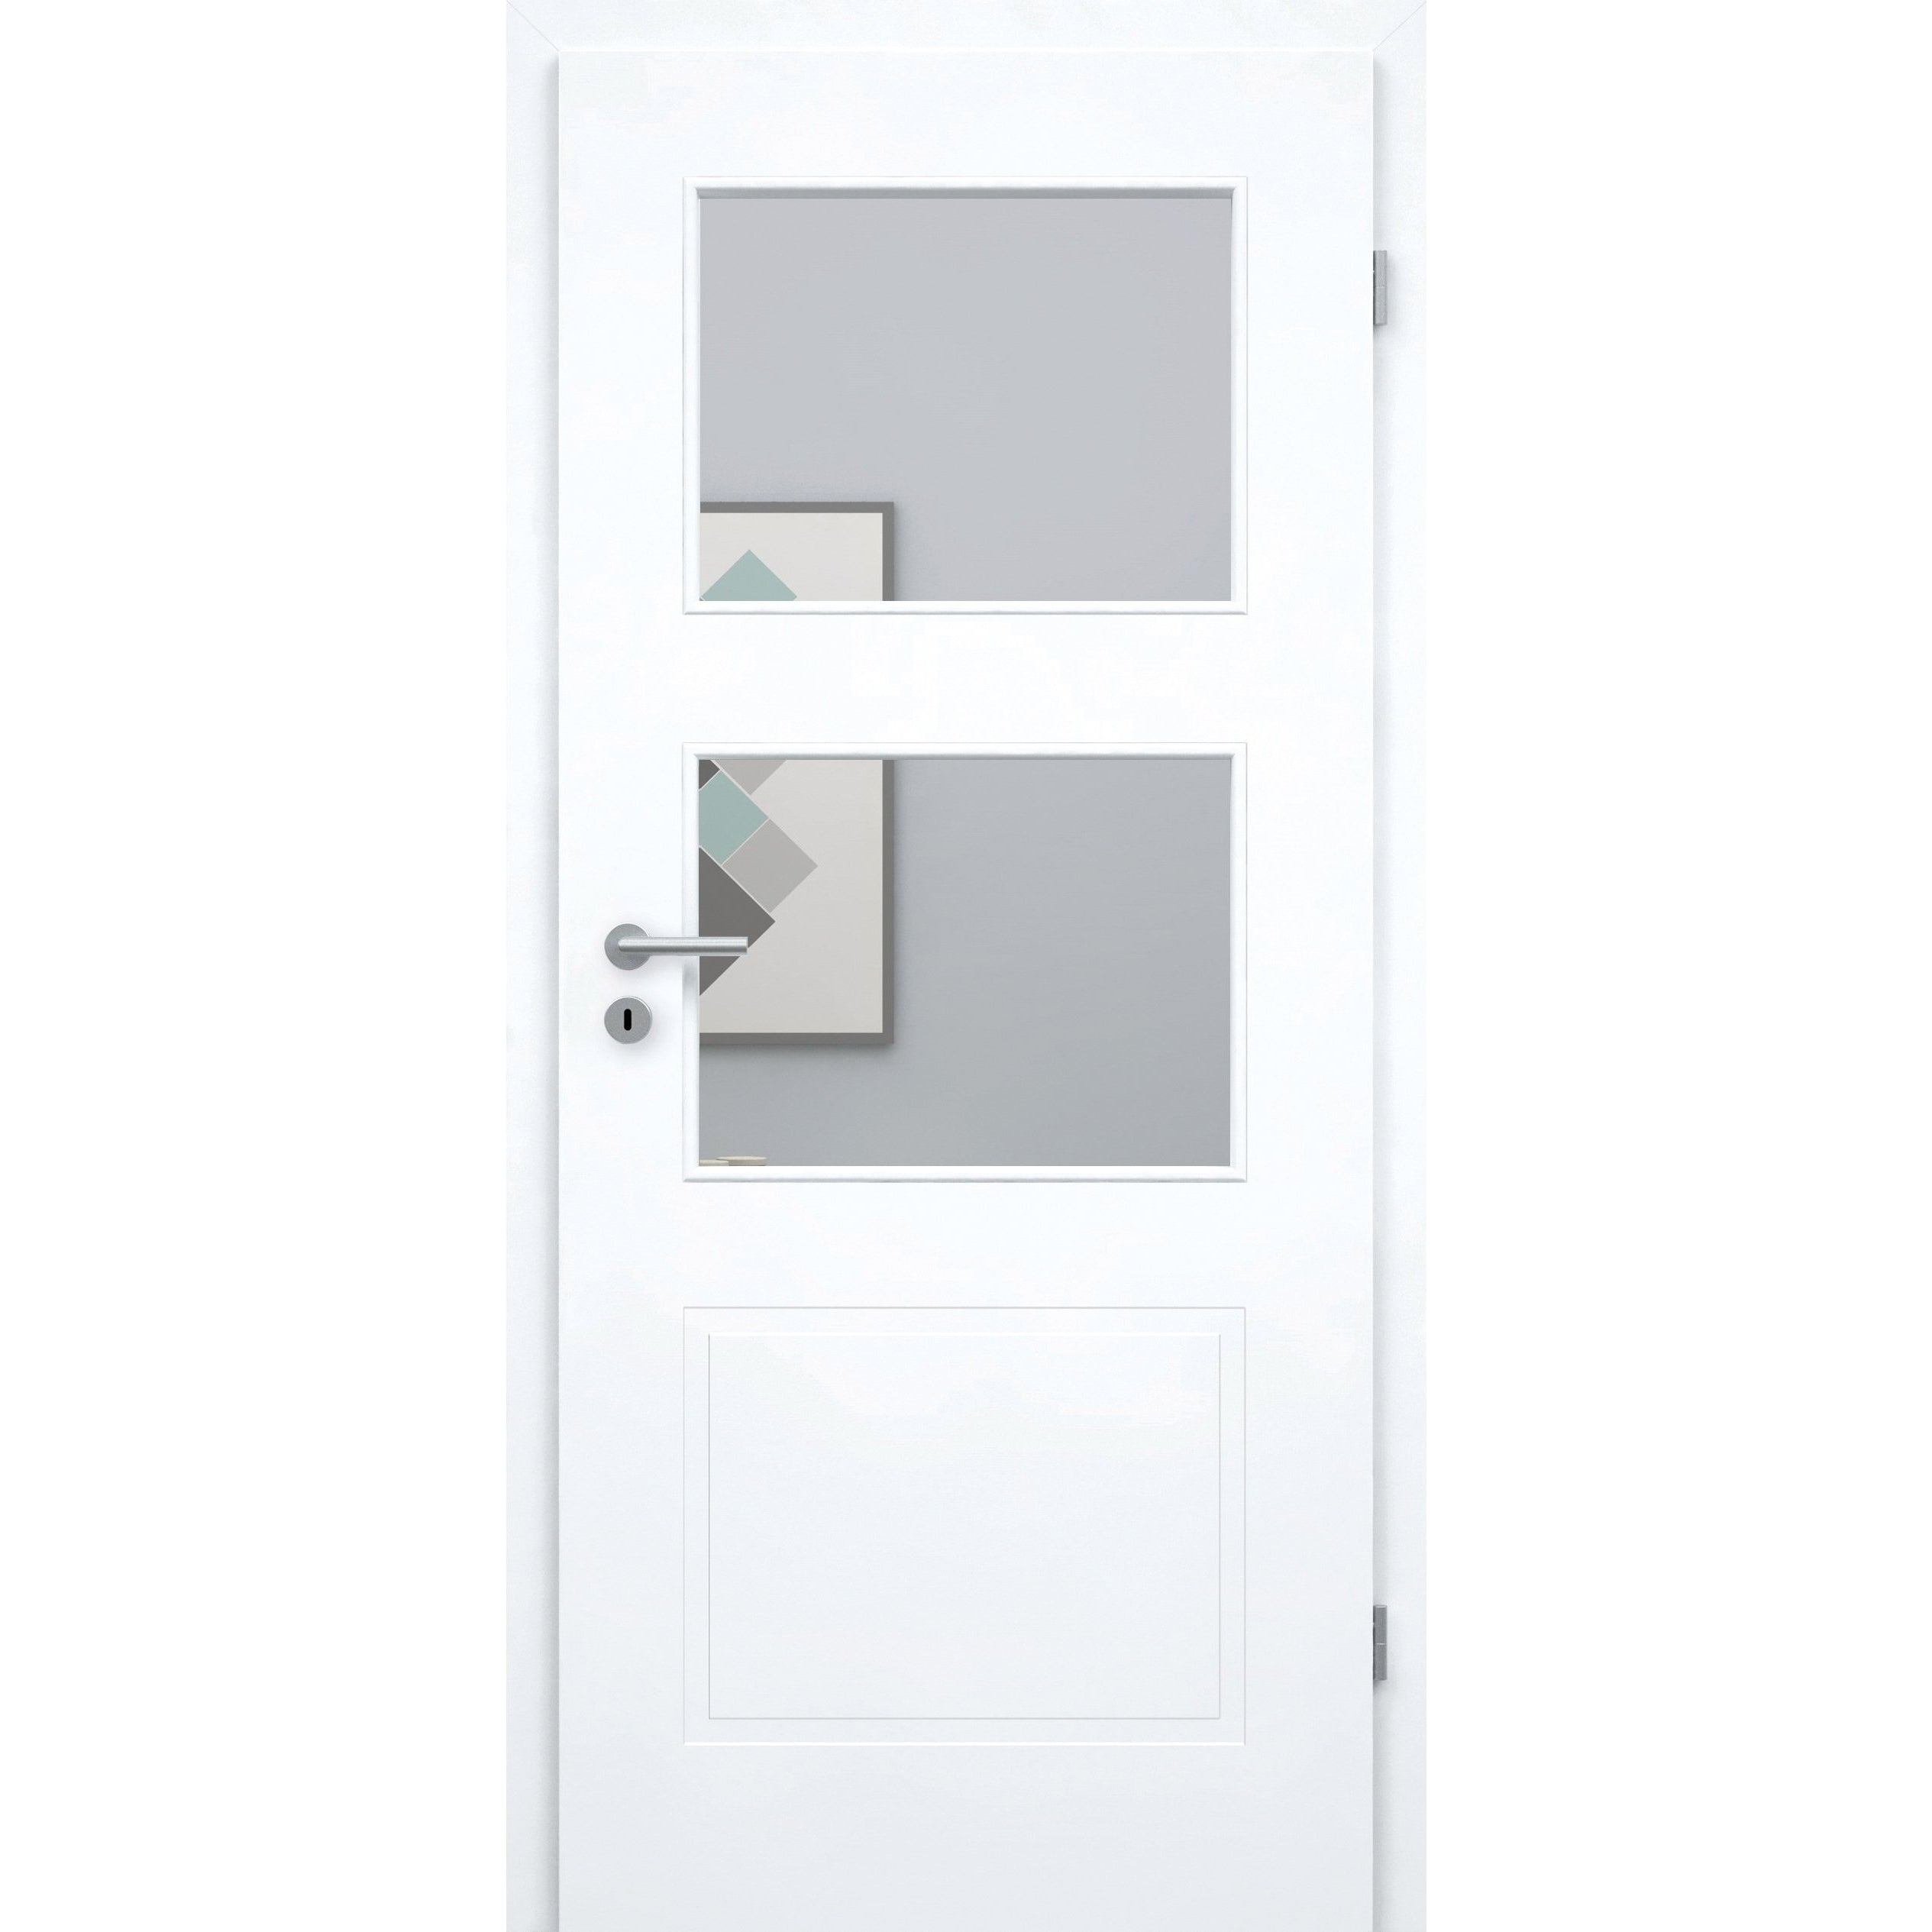 Zimmertür mit Lichtausschnitt brillant-weiß 3 Kassetten Designkante - Modell Stiltür M33LA2